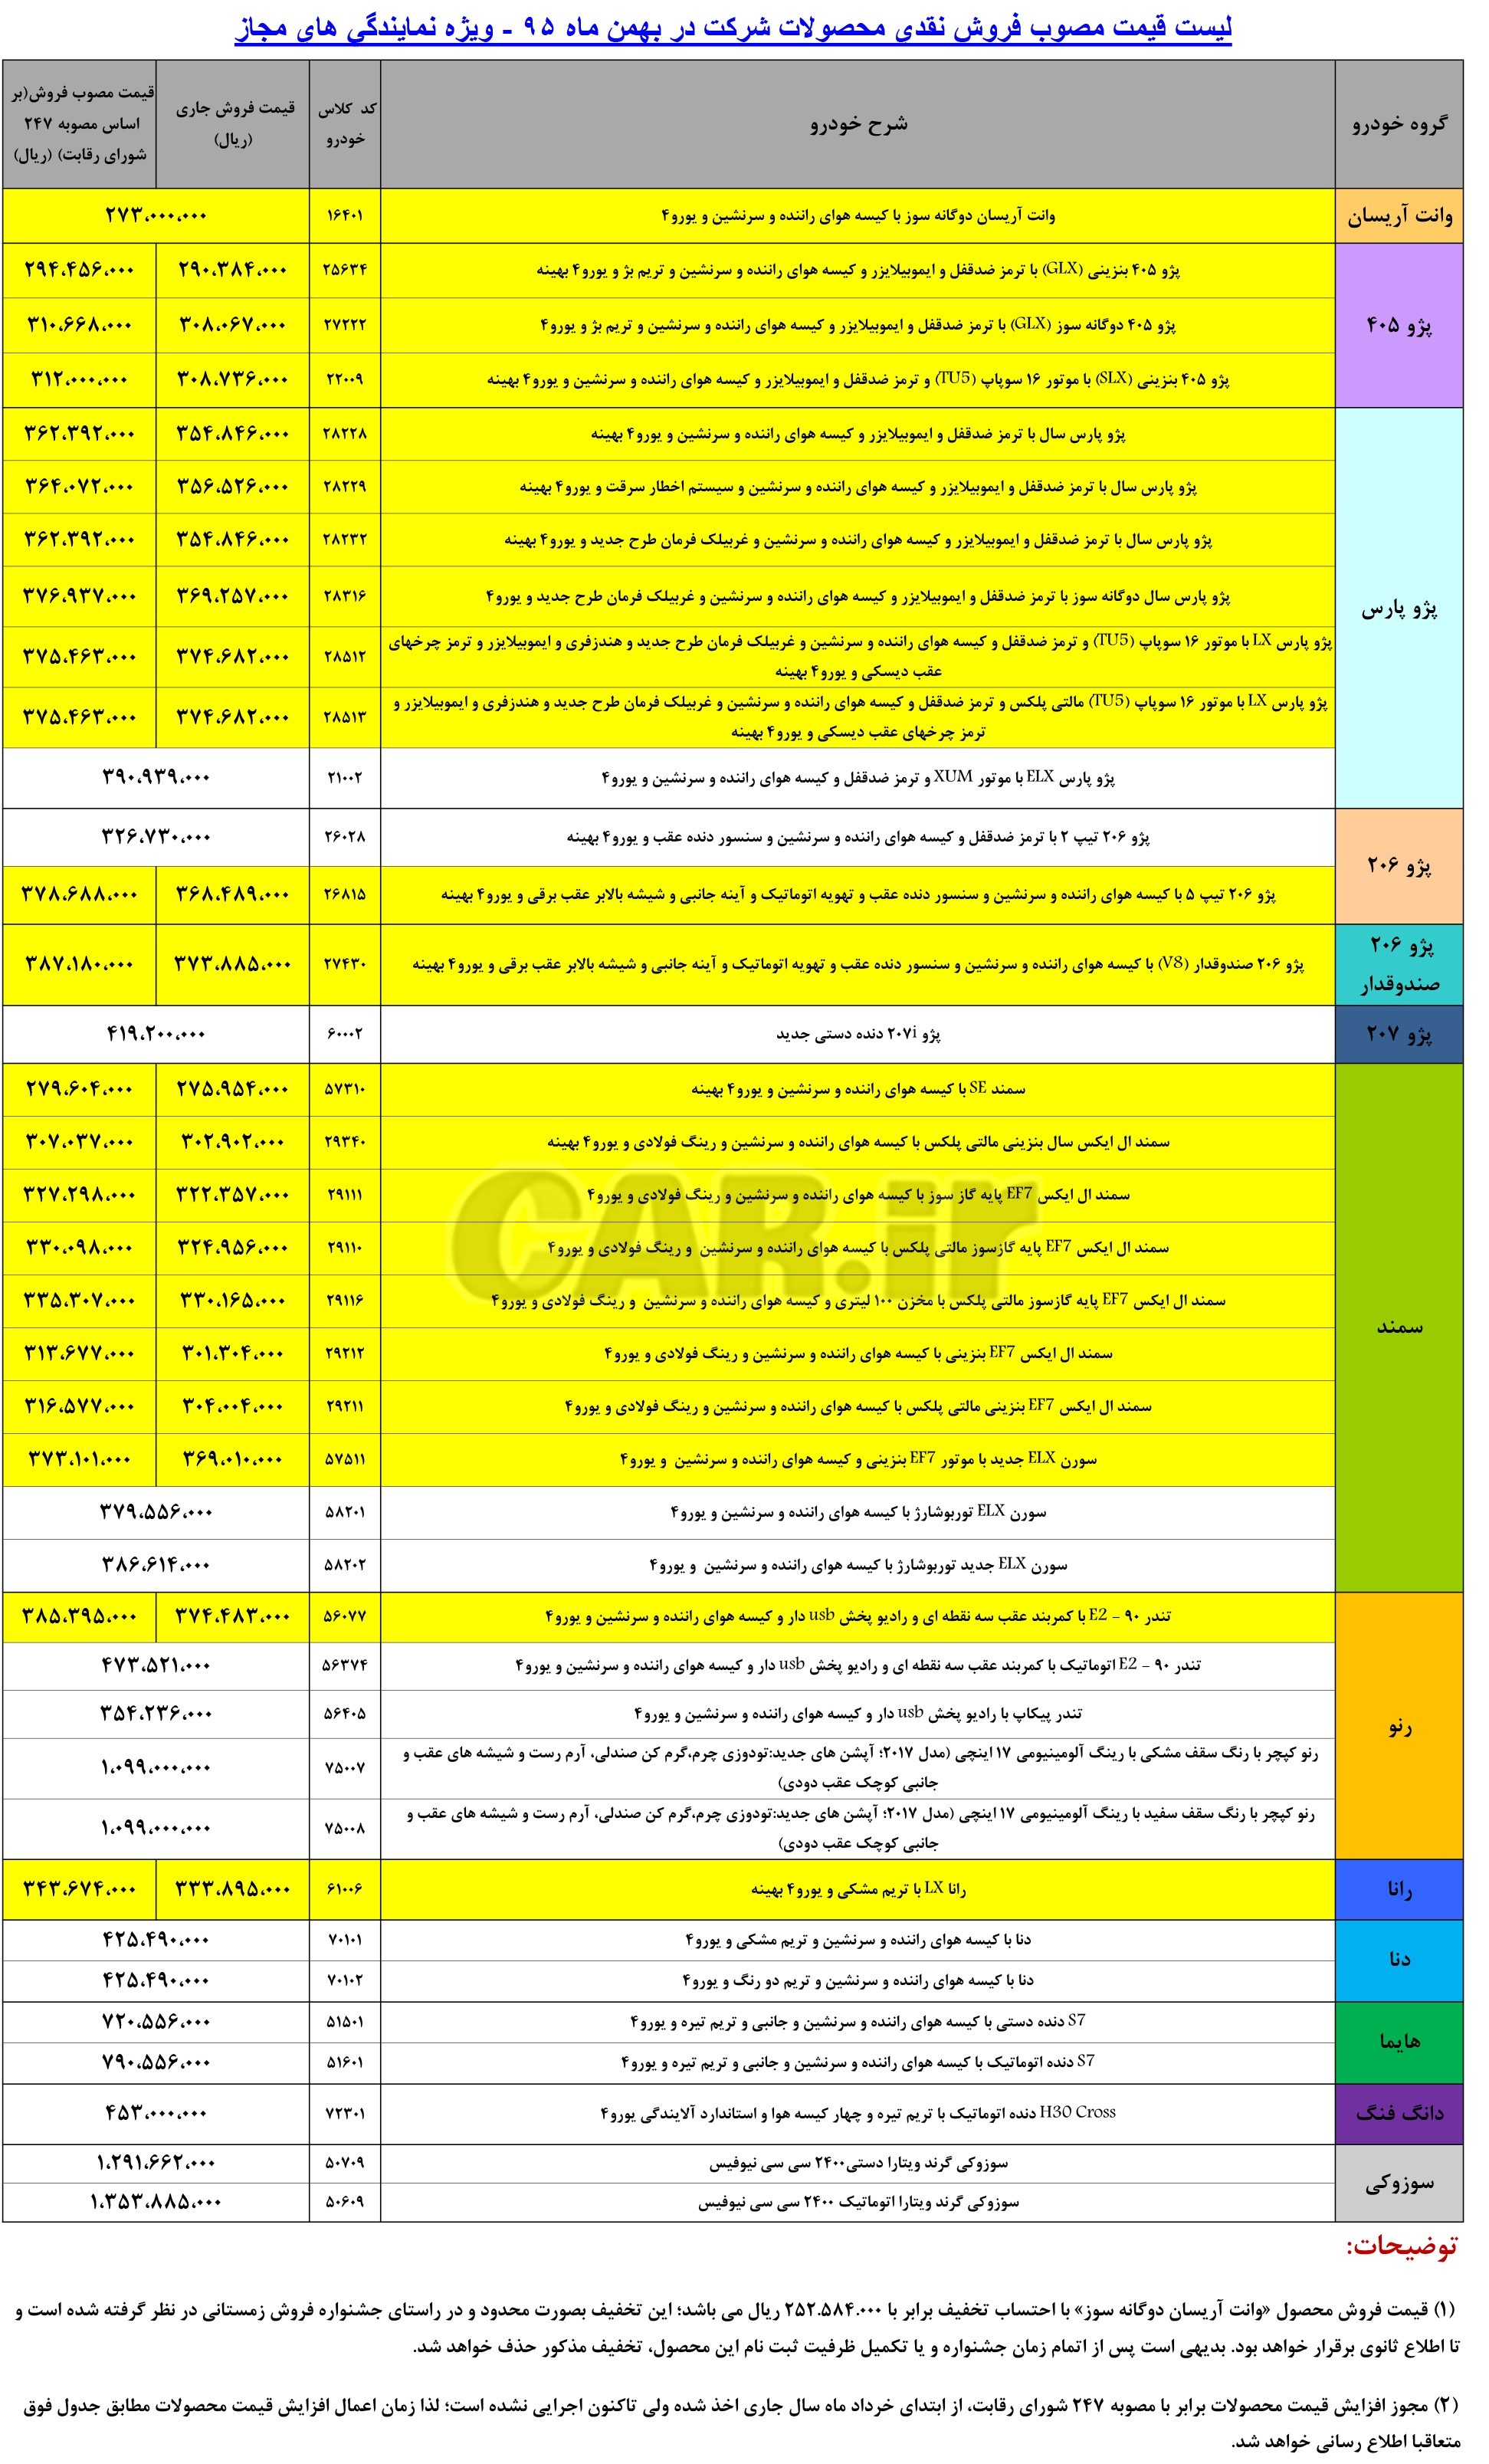 قیمت کارخانه ای کلیه محصولات ایران خودرو - بهمن ماه 95 